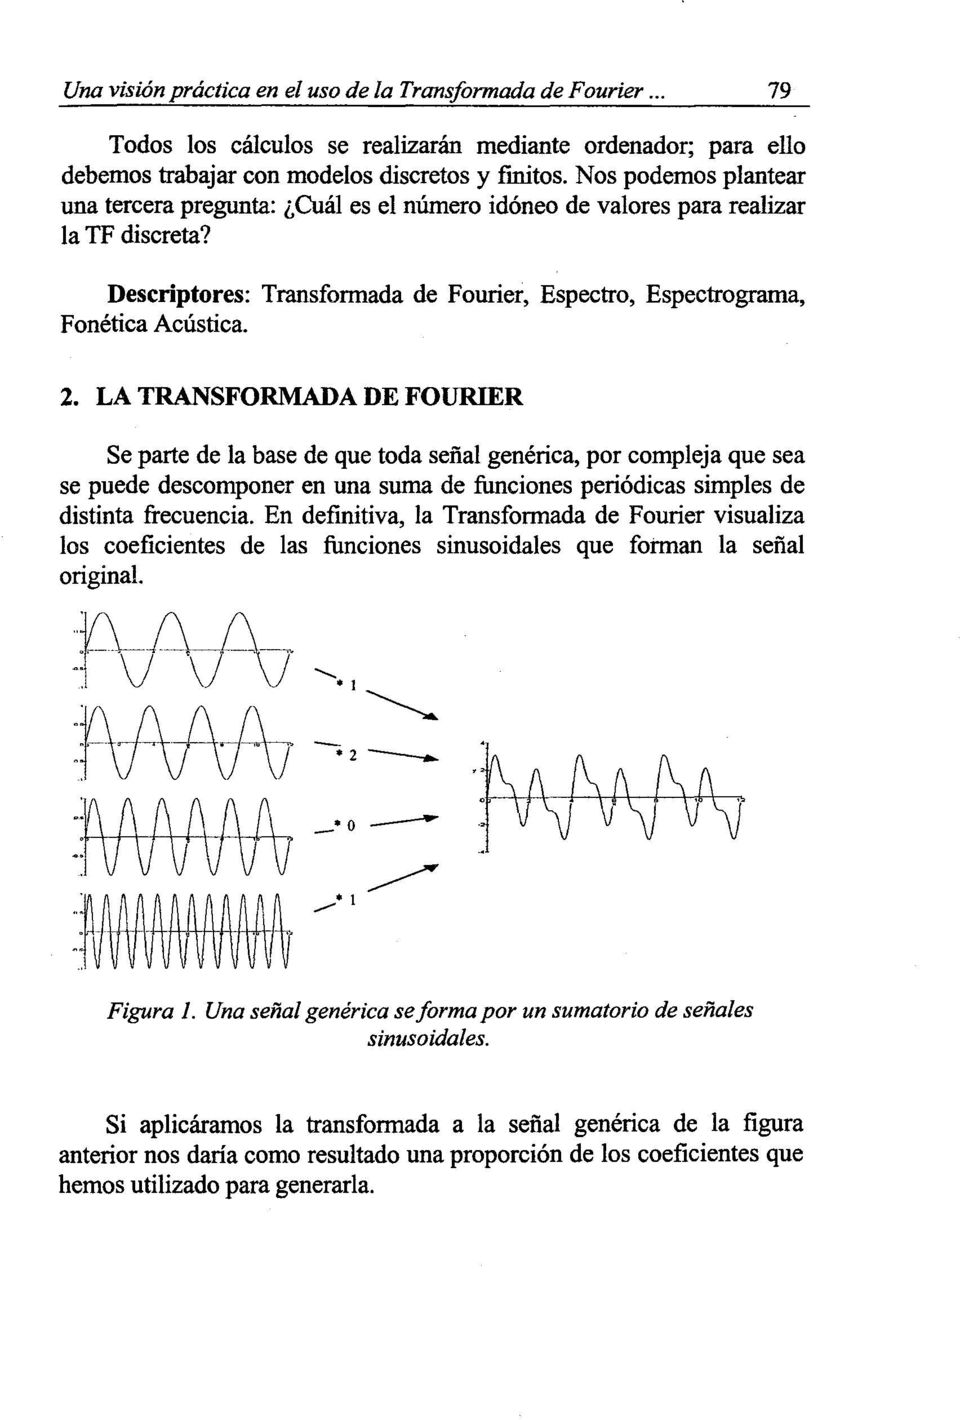 LA TRANSFORMADA DE FOURIER Se parte de la base de que toda señal genérica, por compleja que sea se puede descomponer en una suma de funciones periódicas simples de distinta frecuencia.